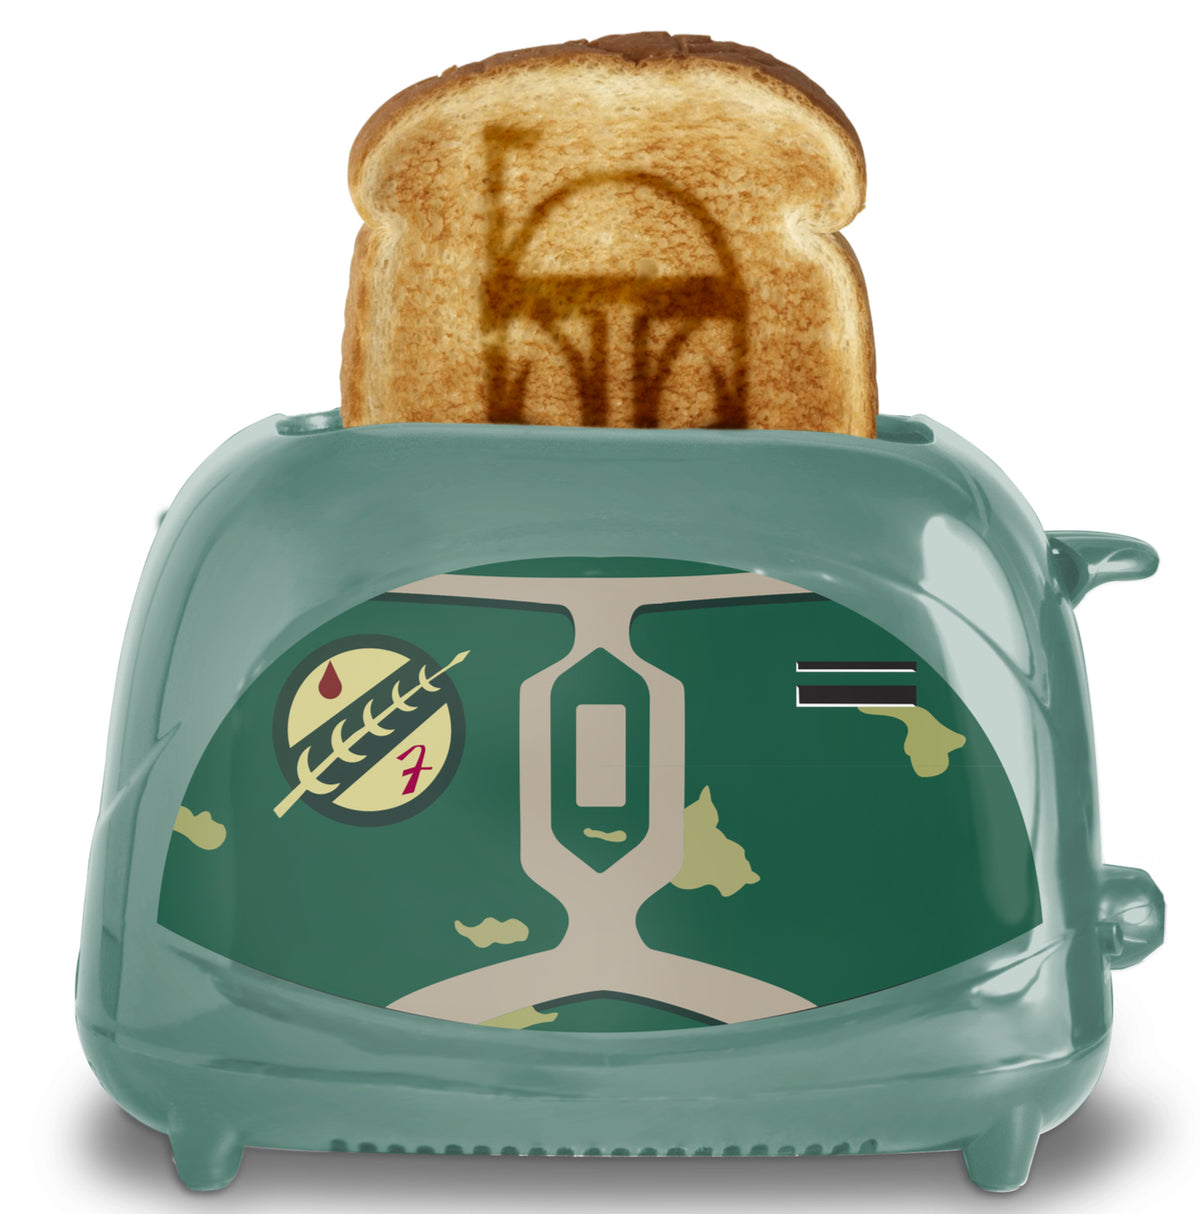 Star Wars Boba Fett Toaster